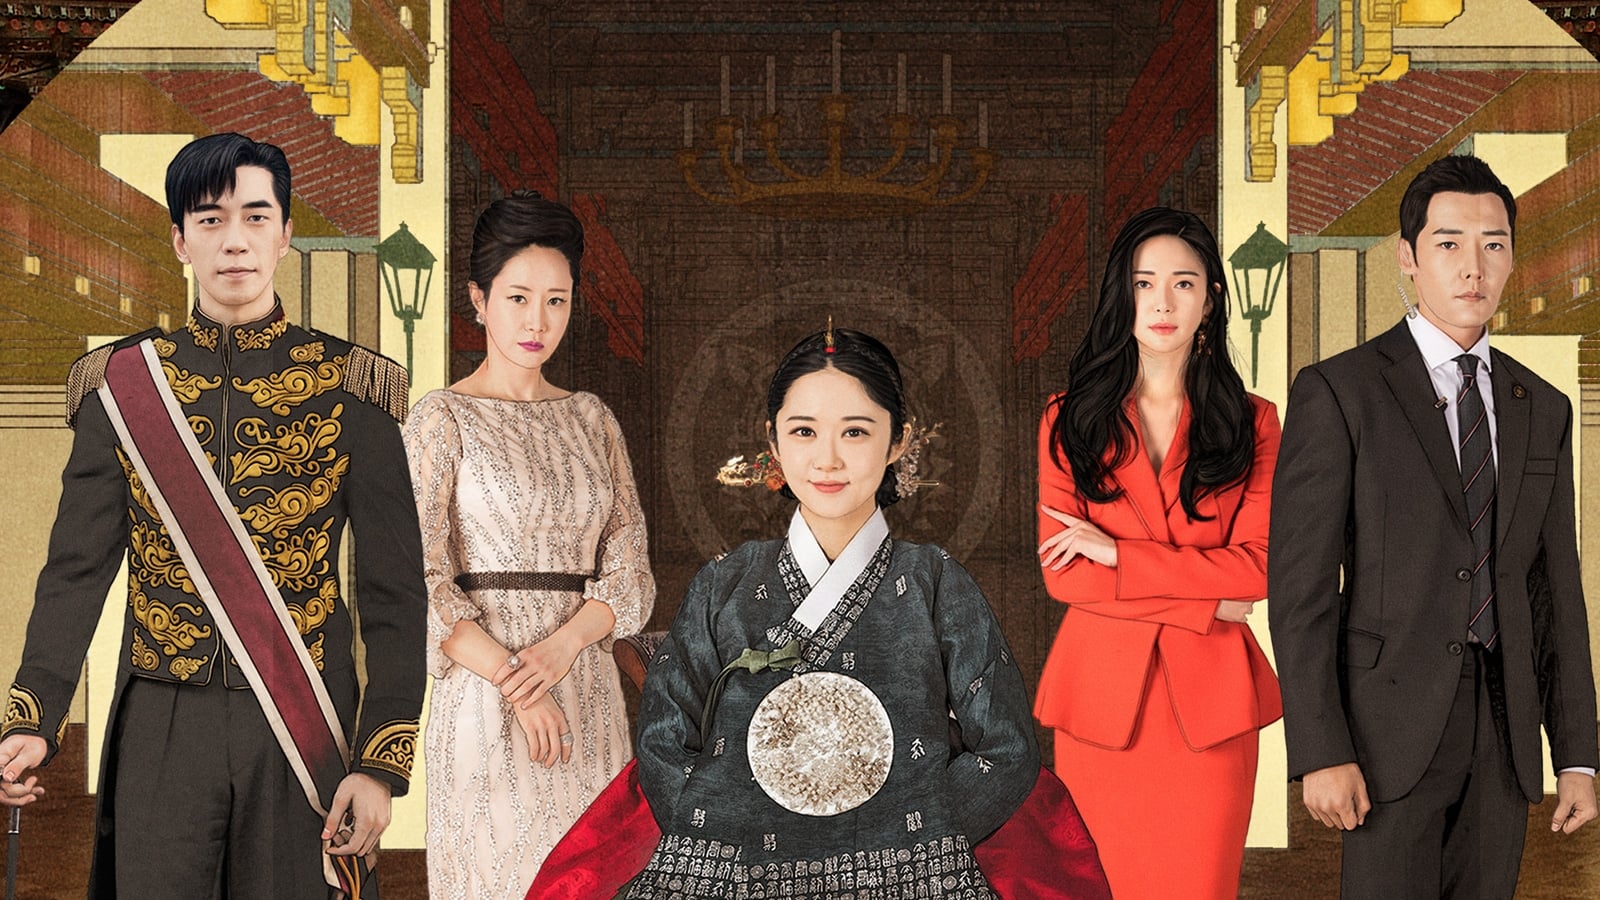 Phim hậu cung tranh tài Hàn Quốc: Hoàng hậu ở đầu cuối - The Last Empress (2018)